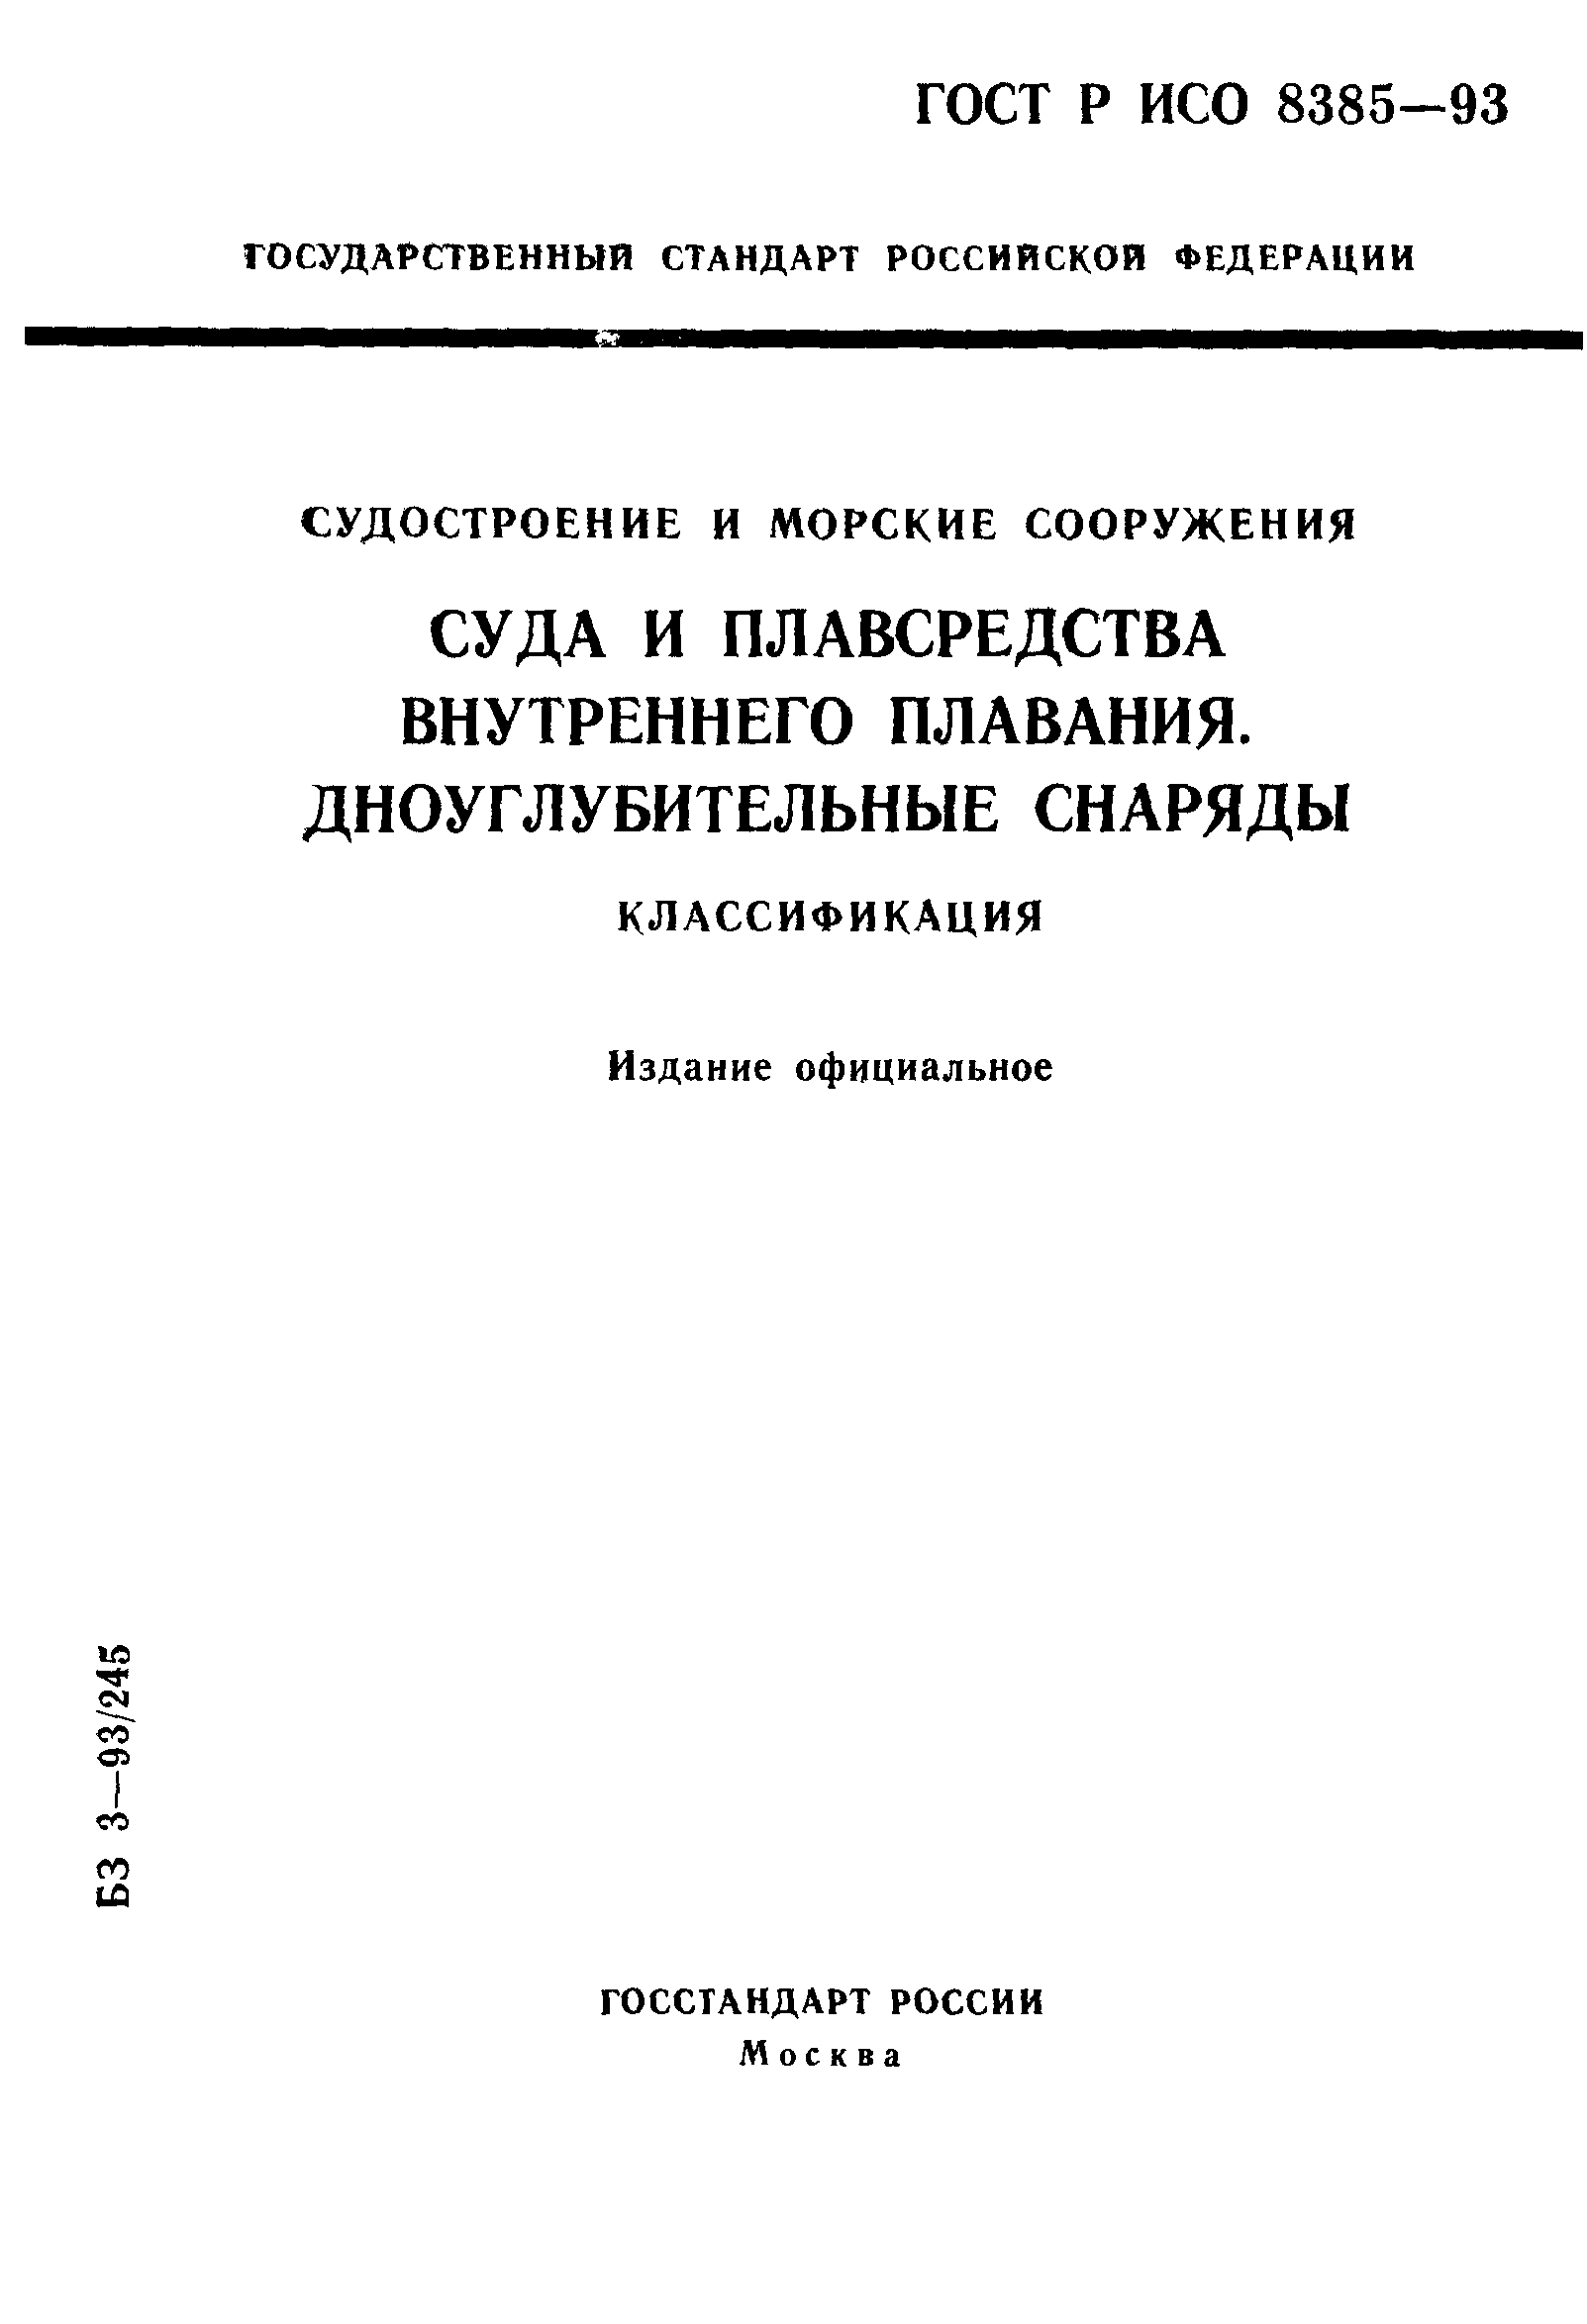 ГОСТ Р ИСО 8385-93